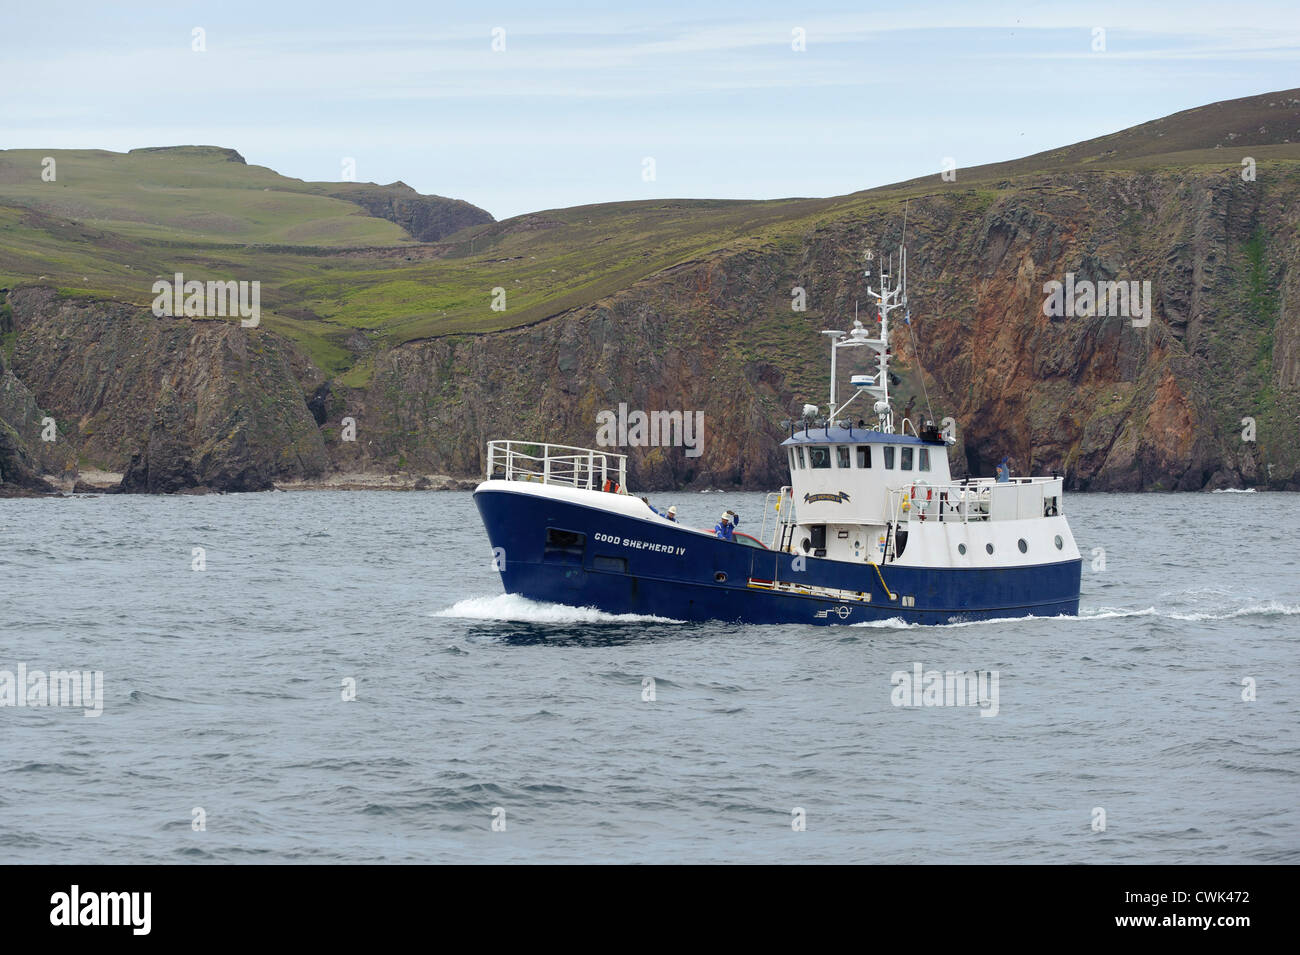 Mail voile Bon Pasteur IV approche de l'Haven sur Fair Isle dans les îles Shetland. Juin 2012. Banque D'Images